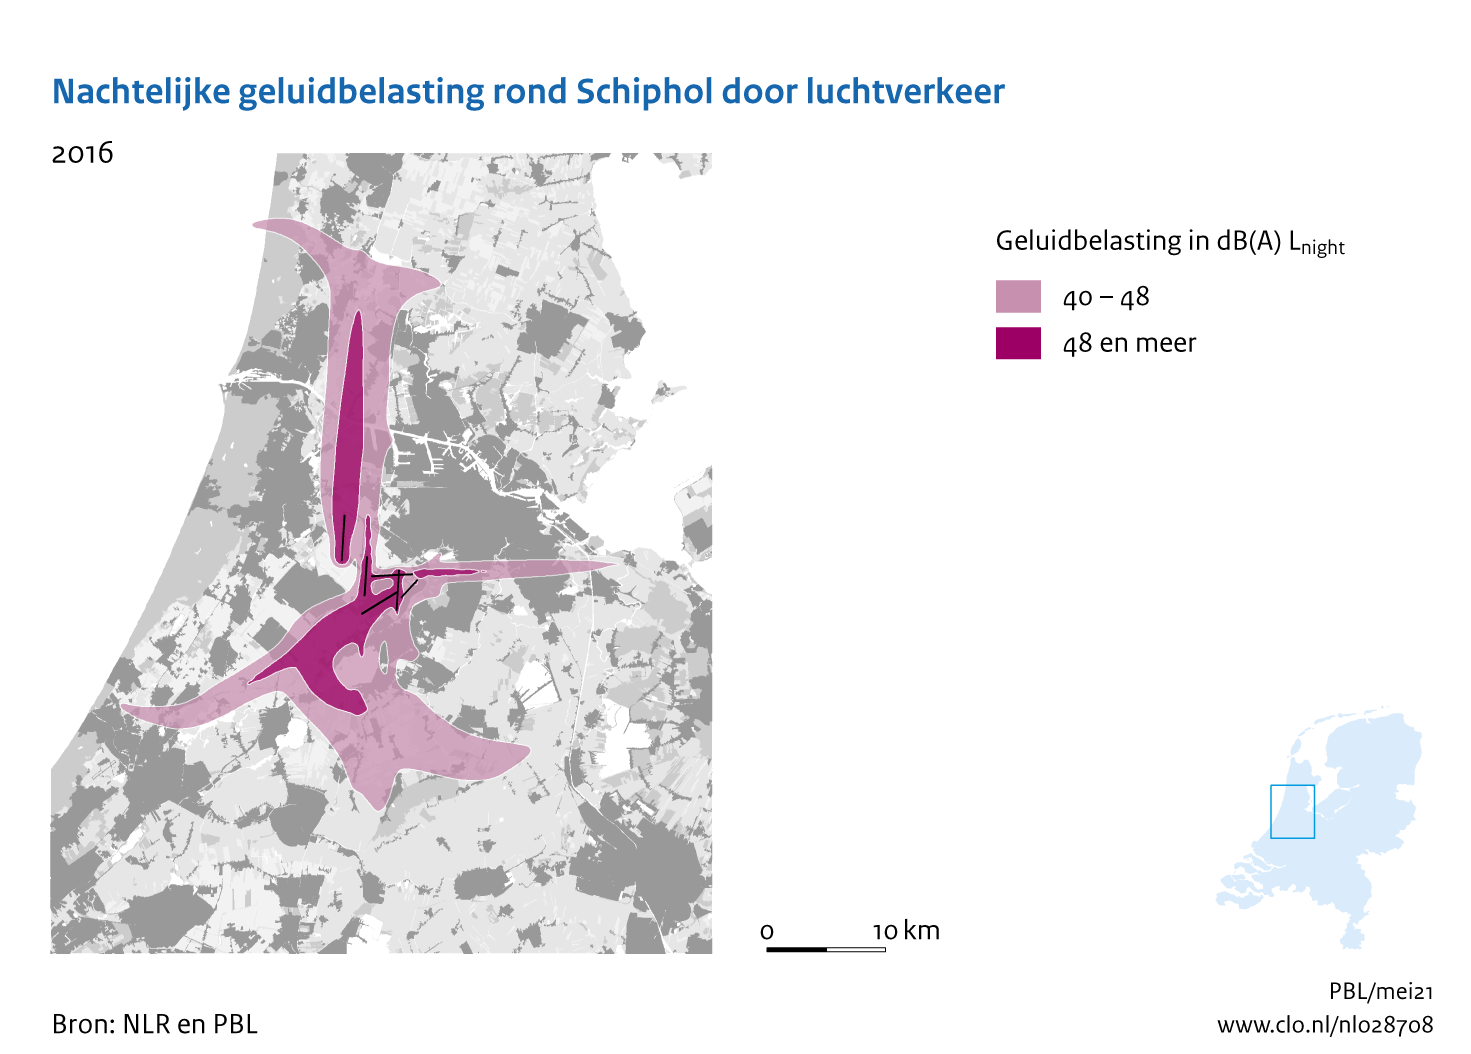 Figuur Nachtelijke geluidbelasting rond Schiphol door luchtverkeer, 2016. In de rest van de tekst wordt deze figuur uitgebreider uitgelegd.